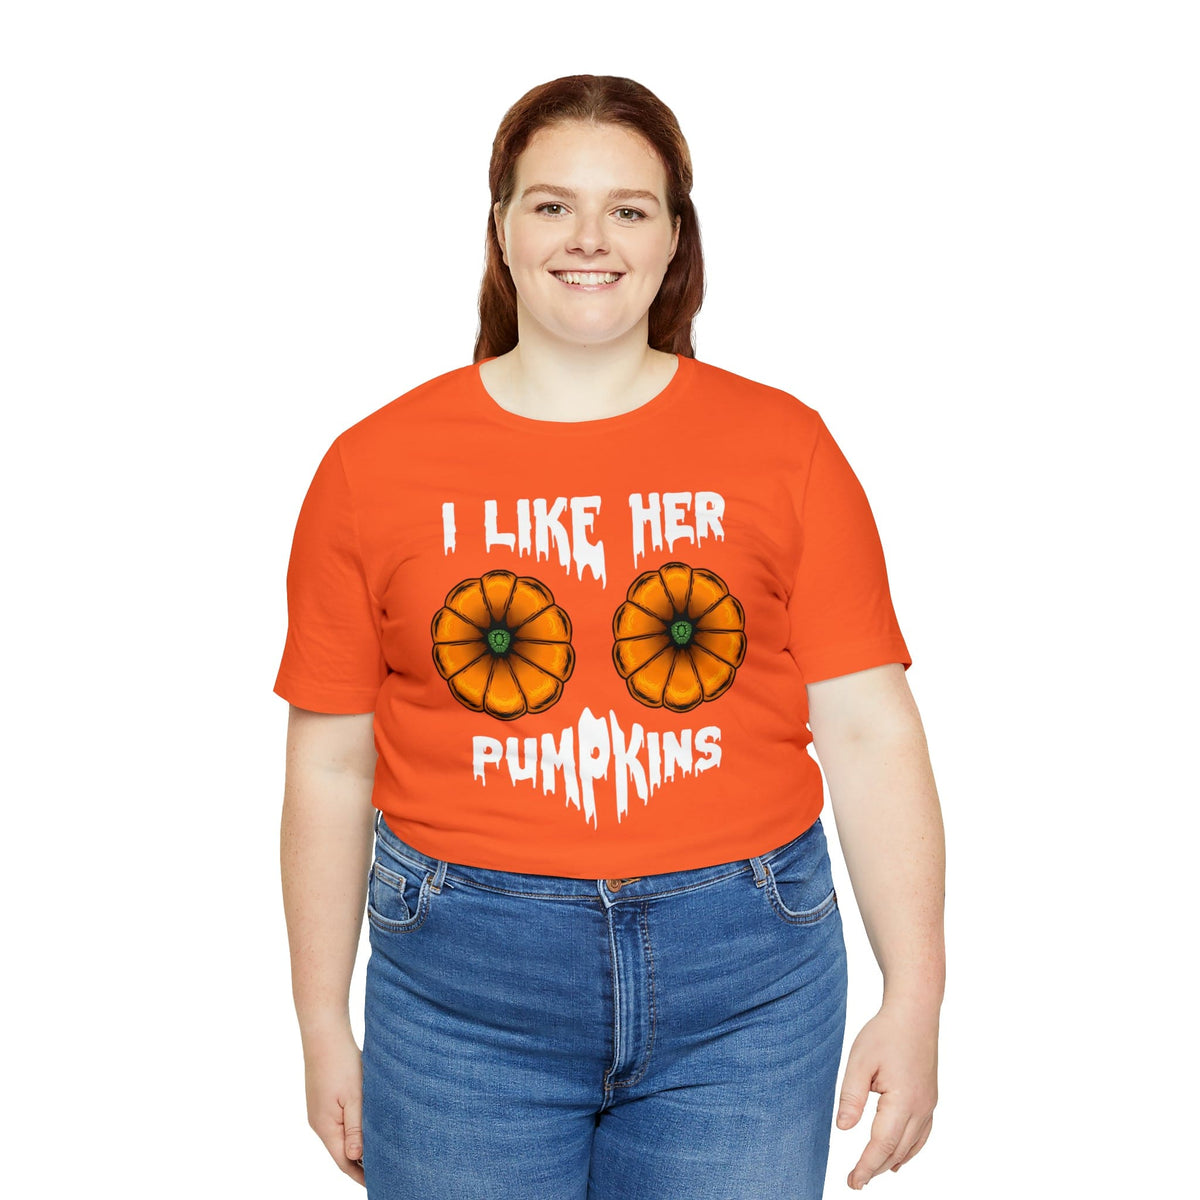 I Like Her pumpkins